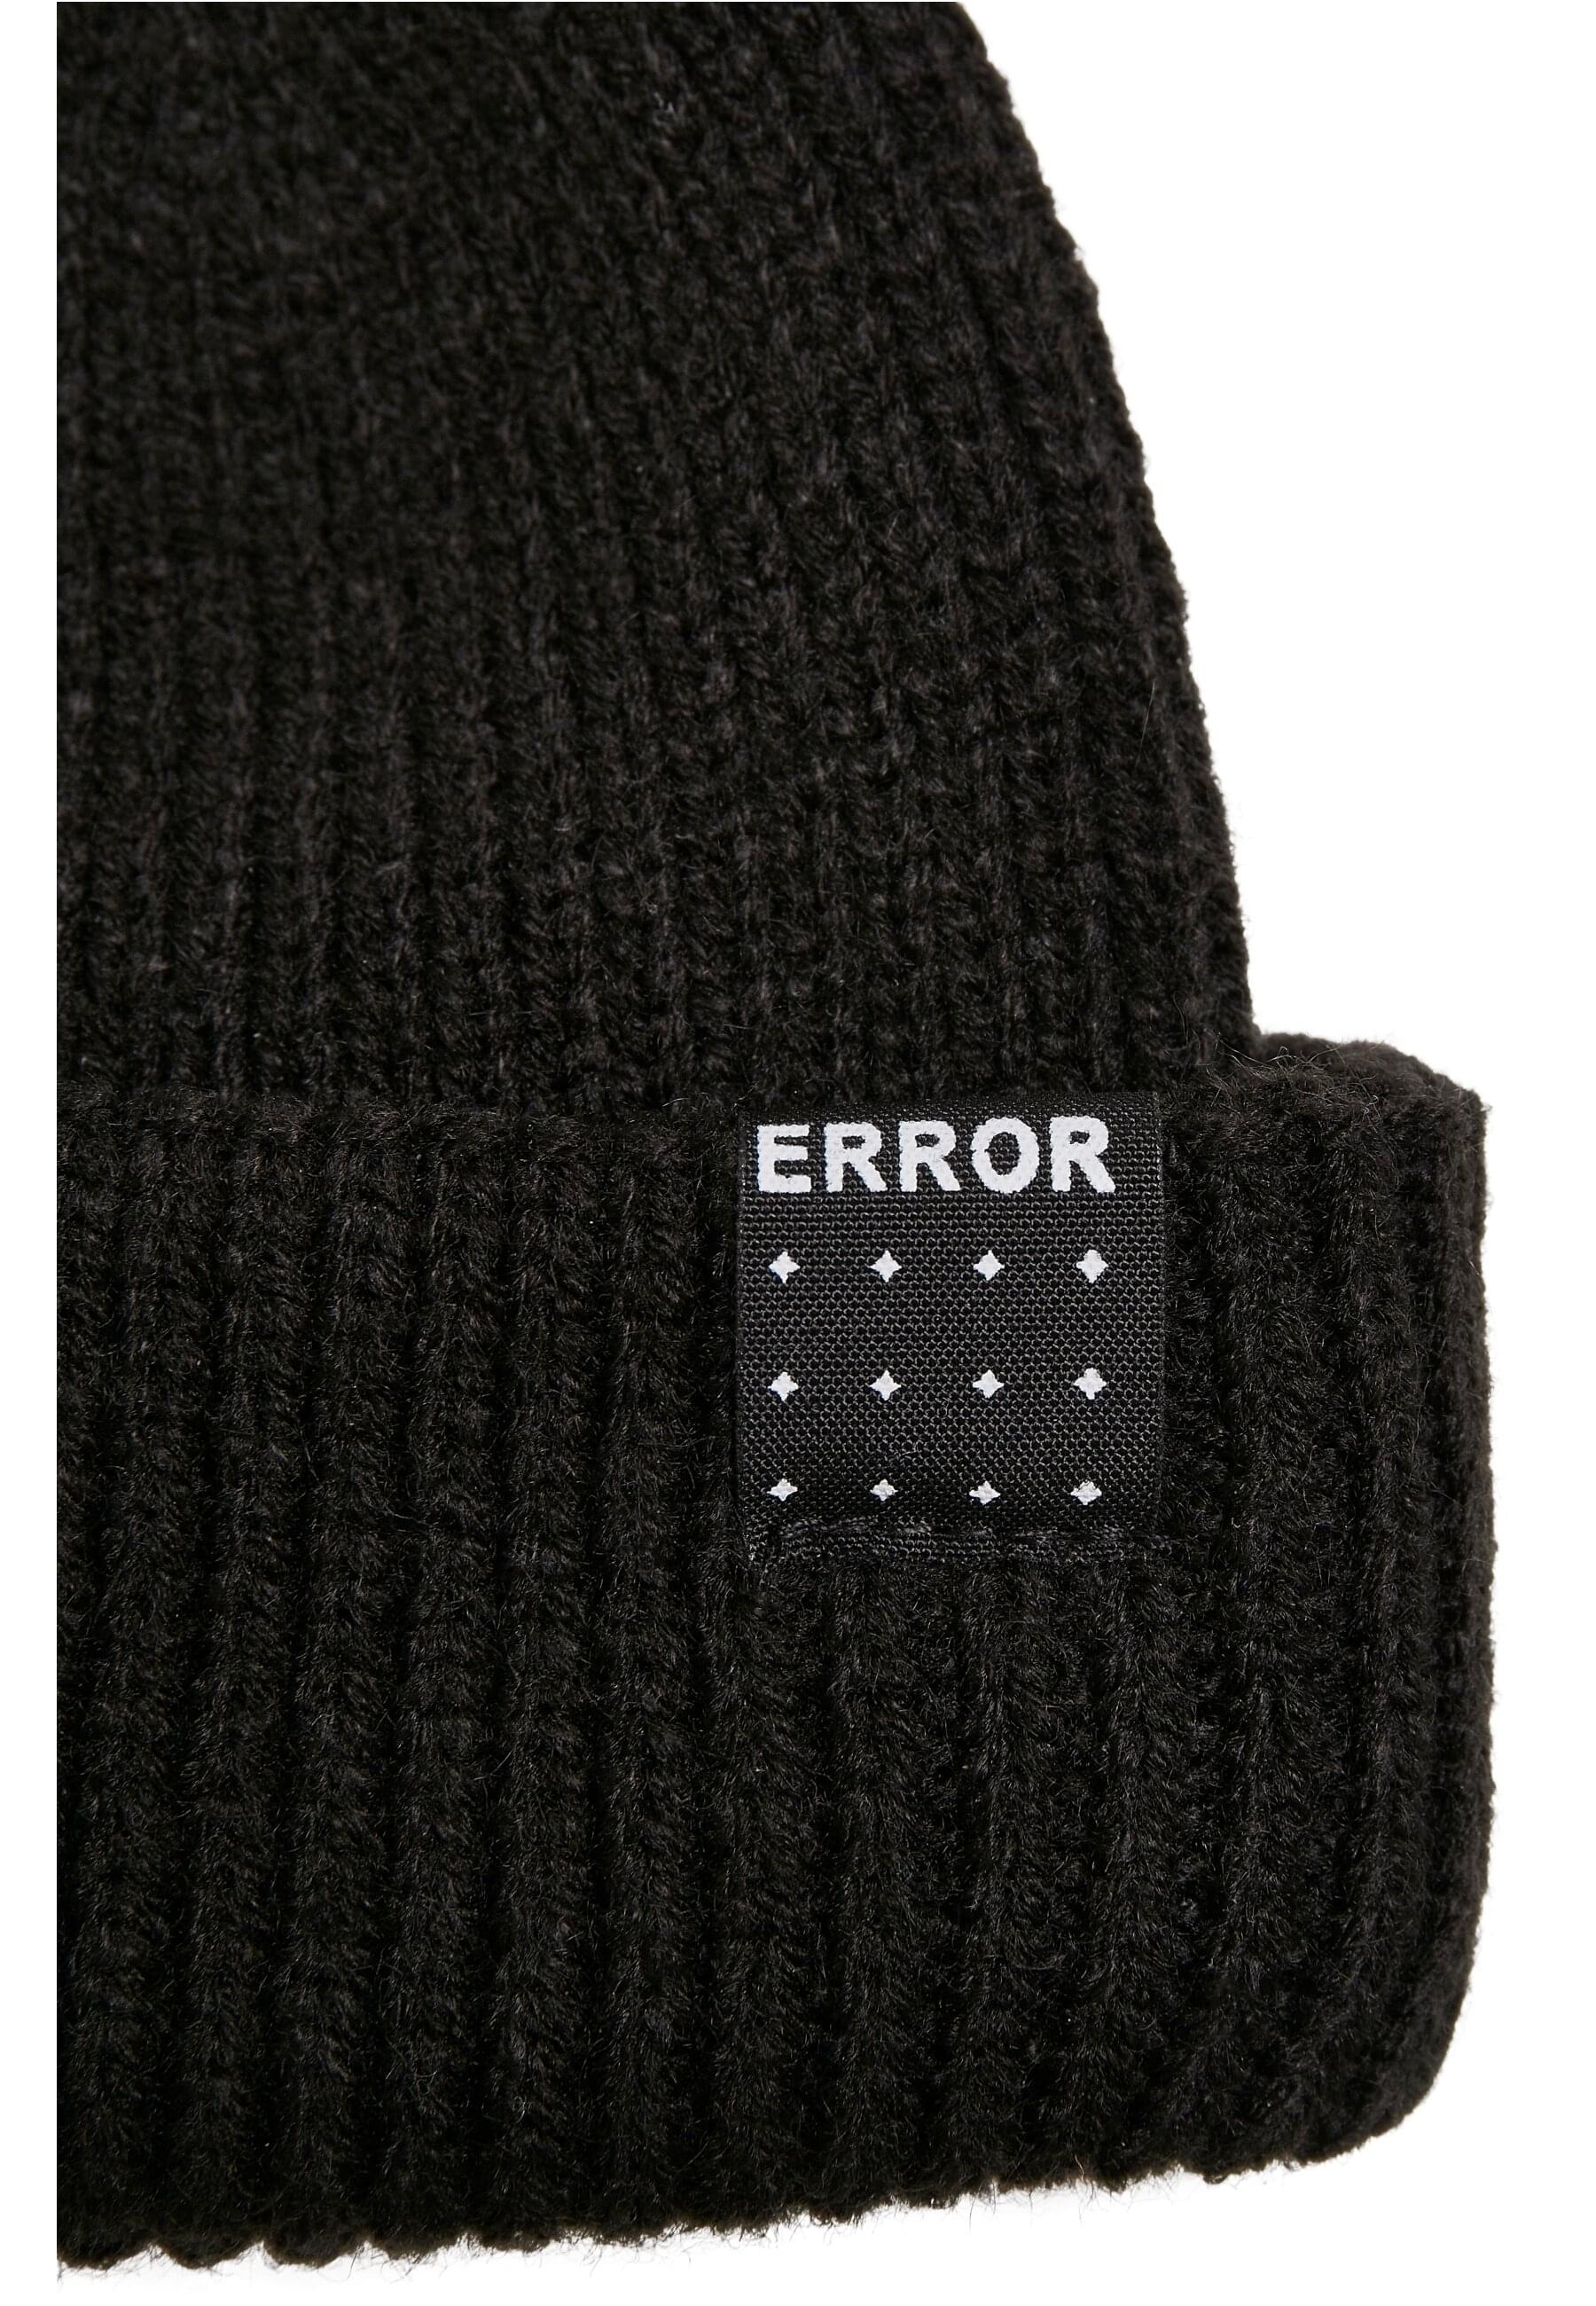 MisterTee Schmuckset »Accessories Error Knit Set«, (1 tlg.)